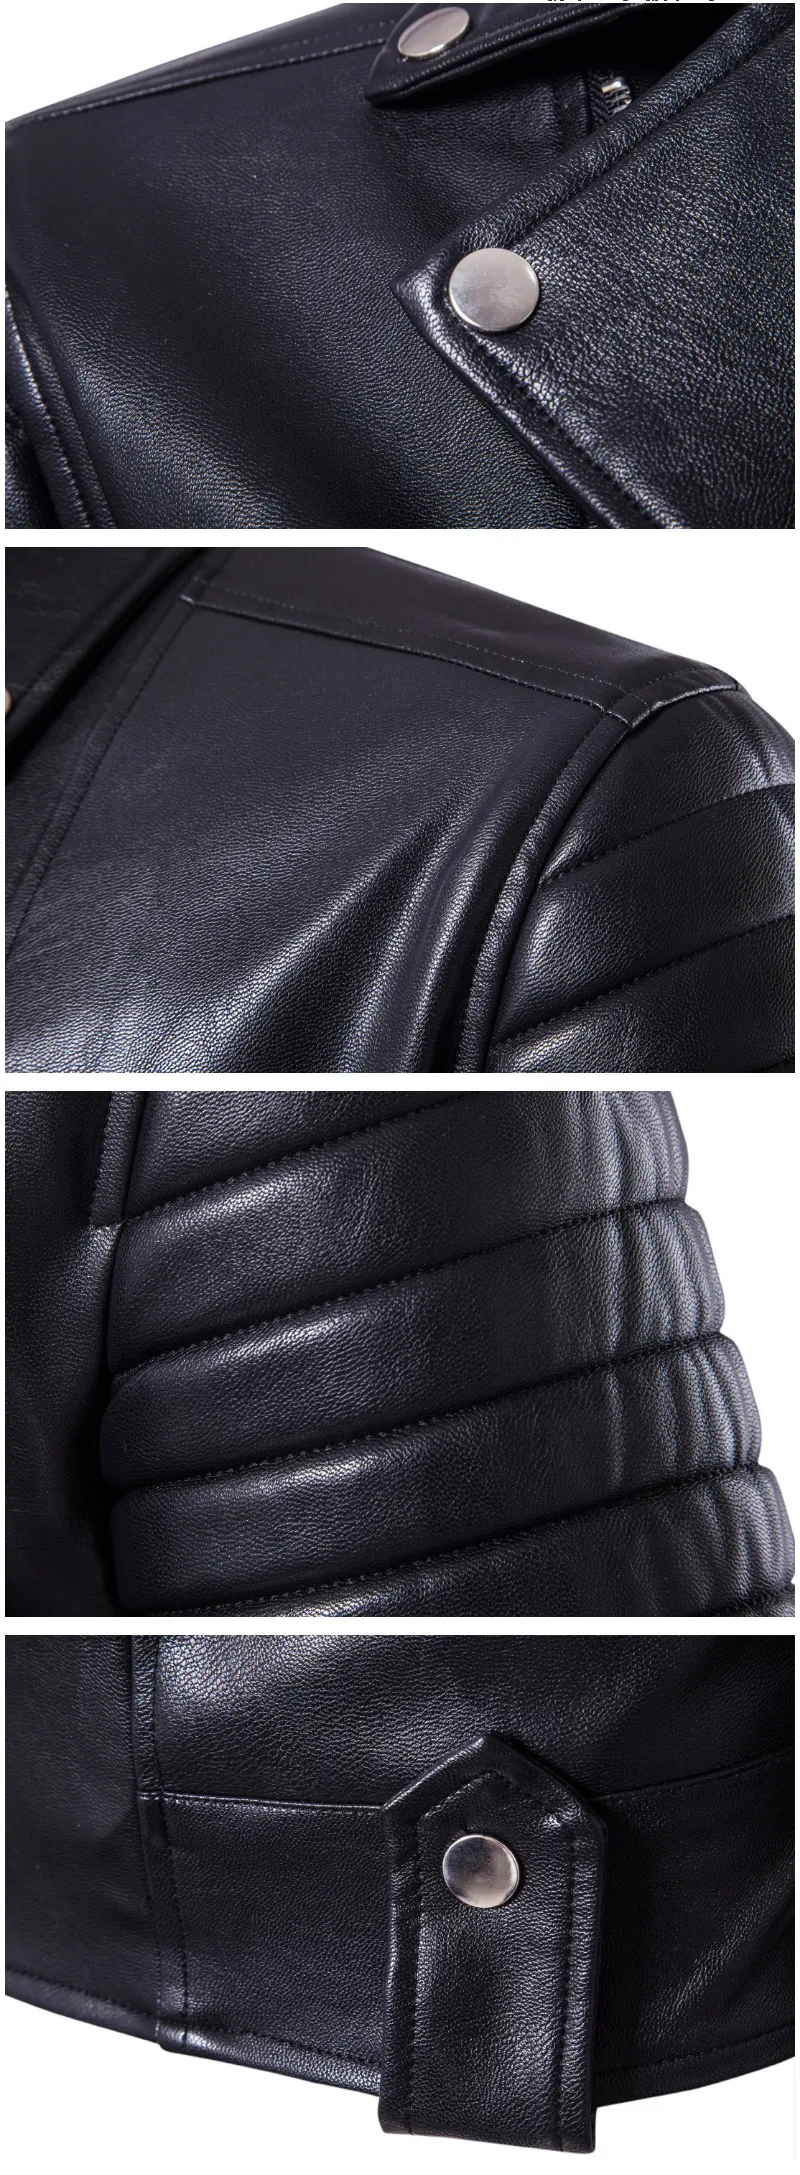 Новая осенне-зимняя мужская Черная куртка из искусственной кожи, модная куртка в стиле панк с несколькими молниями и отворотом, красивое